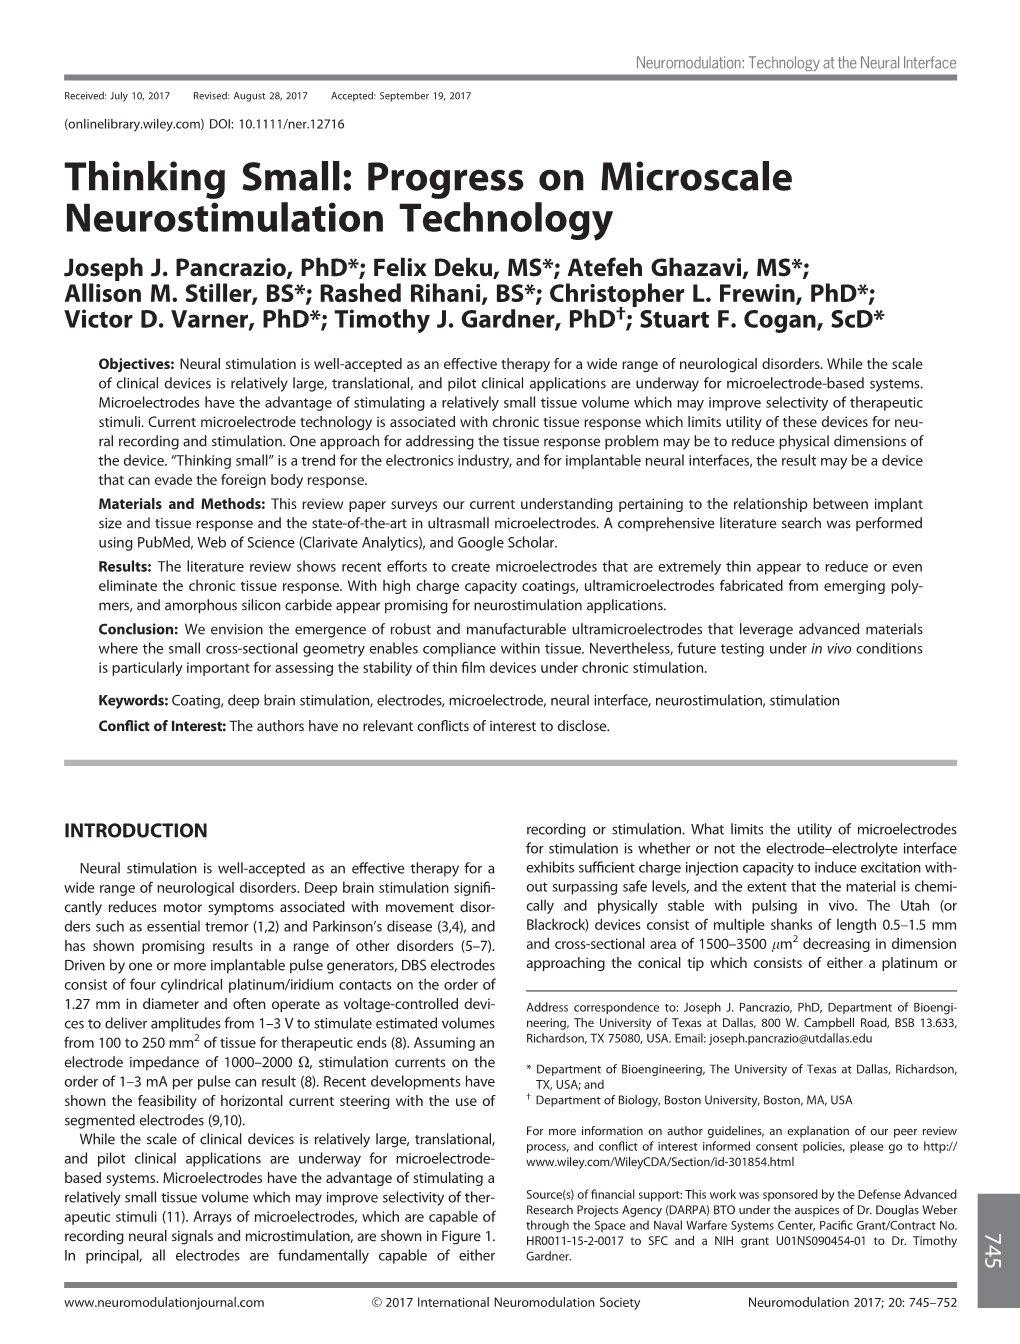 Thinking Small: Progress on Microscale Neurostimulation Technology Joseph J